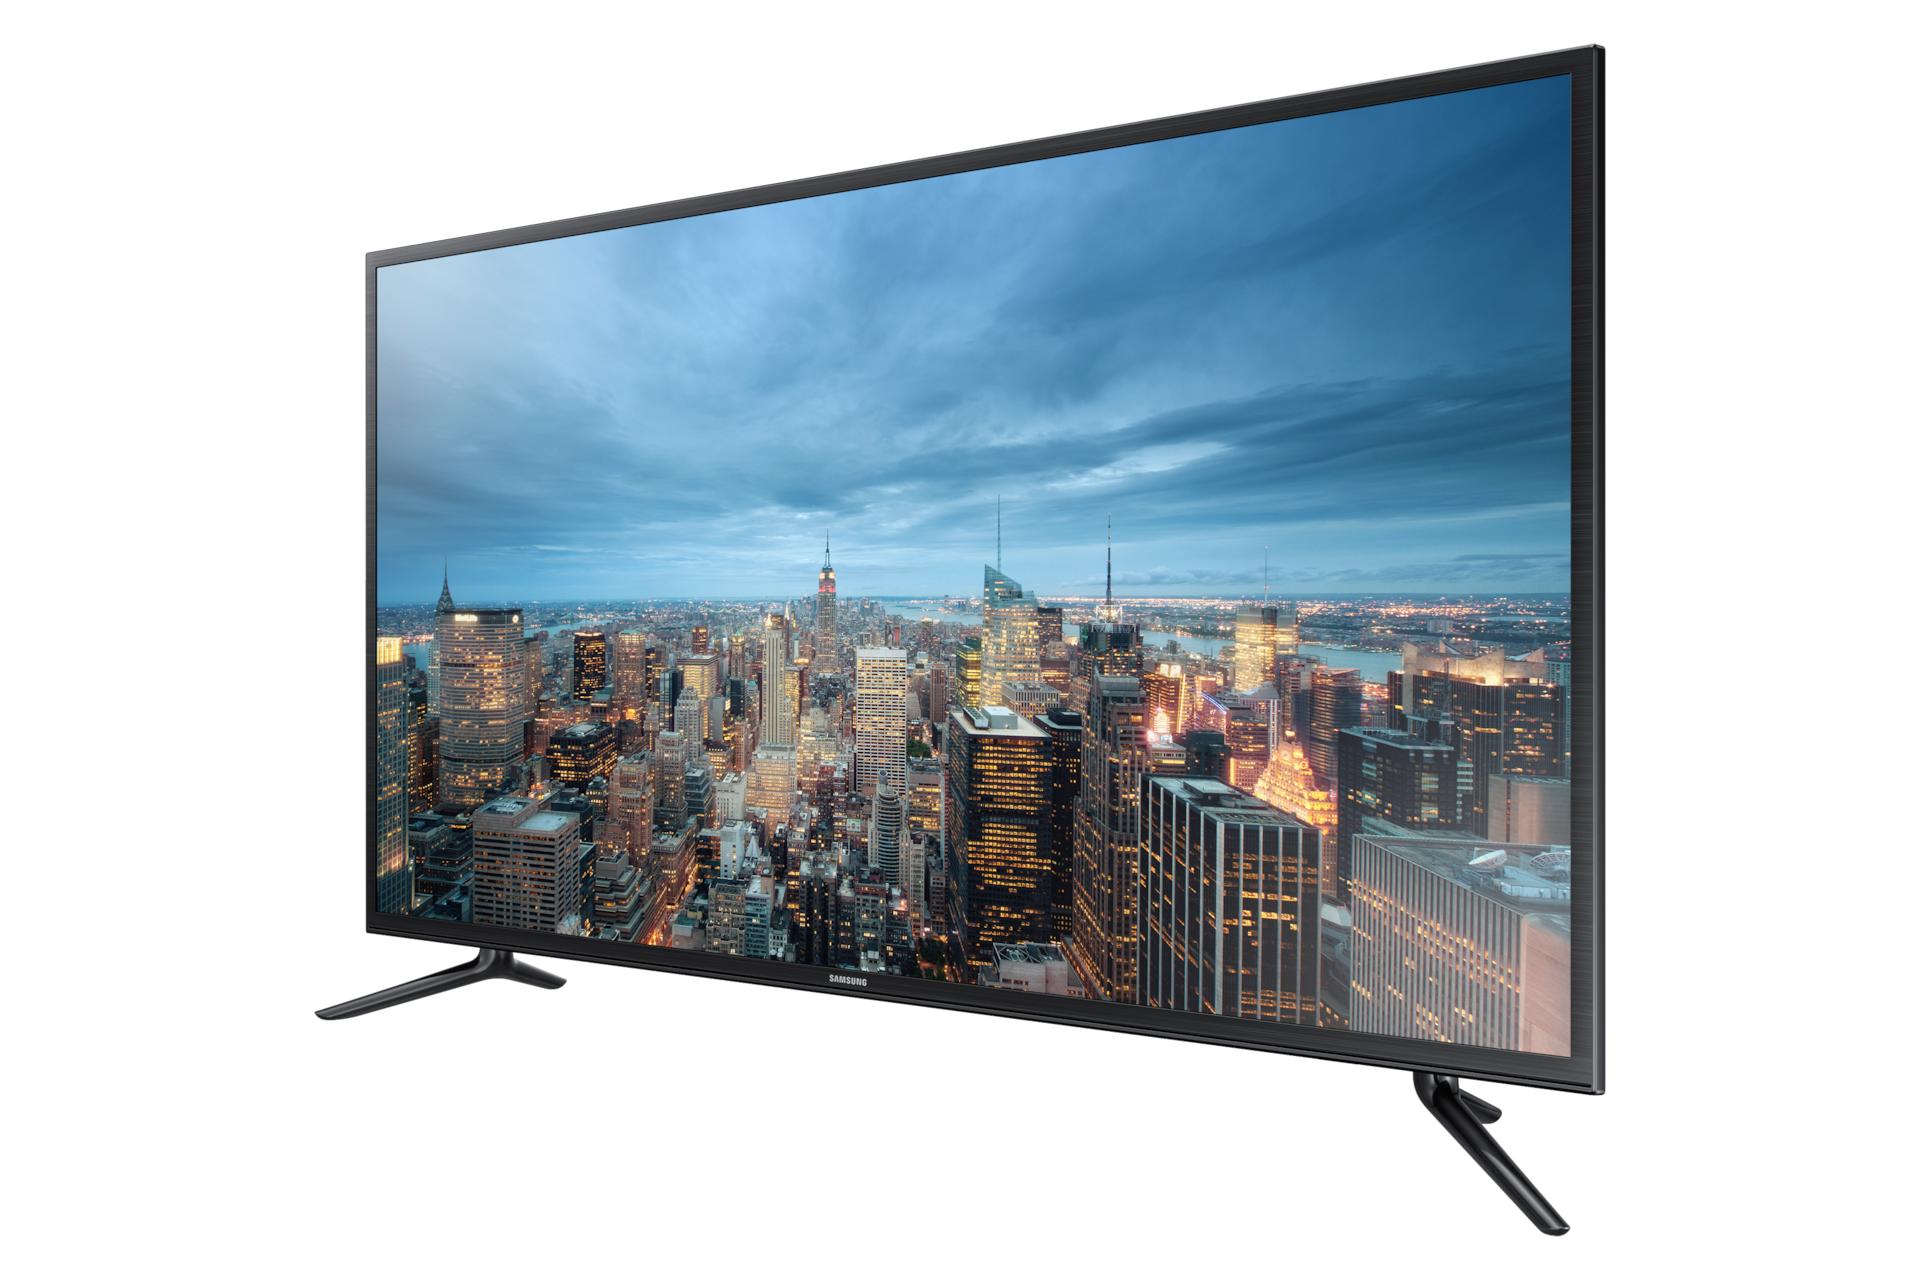 Mogelijk Voorwaarden stuk 40" UHD 4K Flat Smart TV JU6100H Series 6 | UN40JU6100HXPA | Samsung  Caribbean